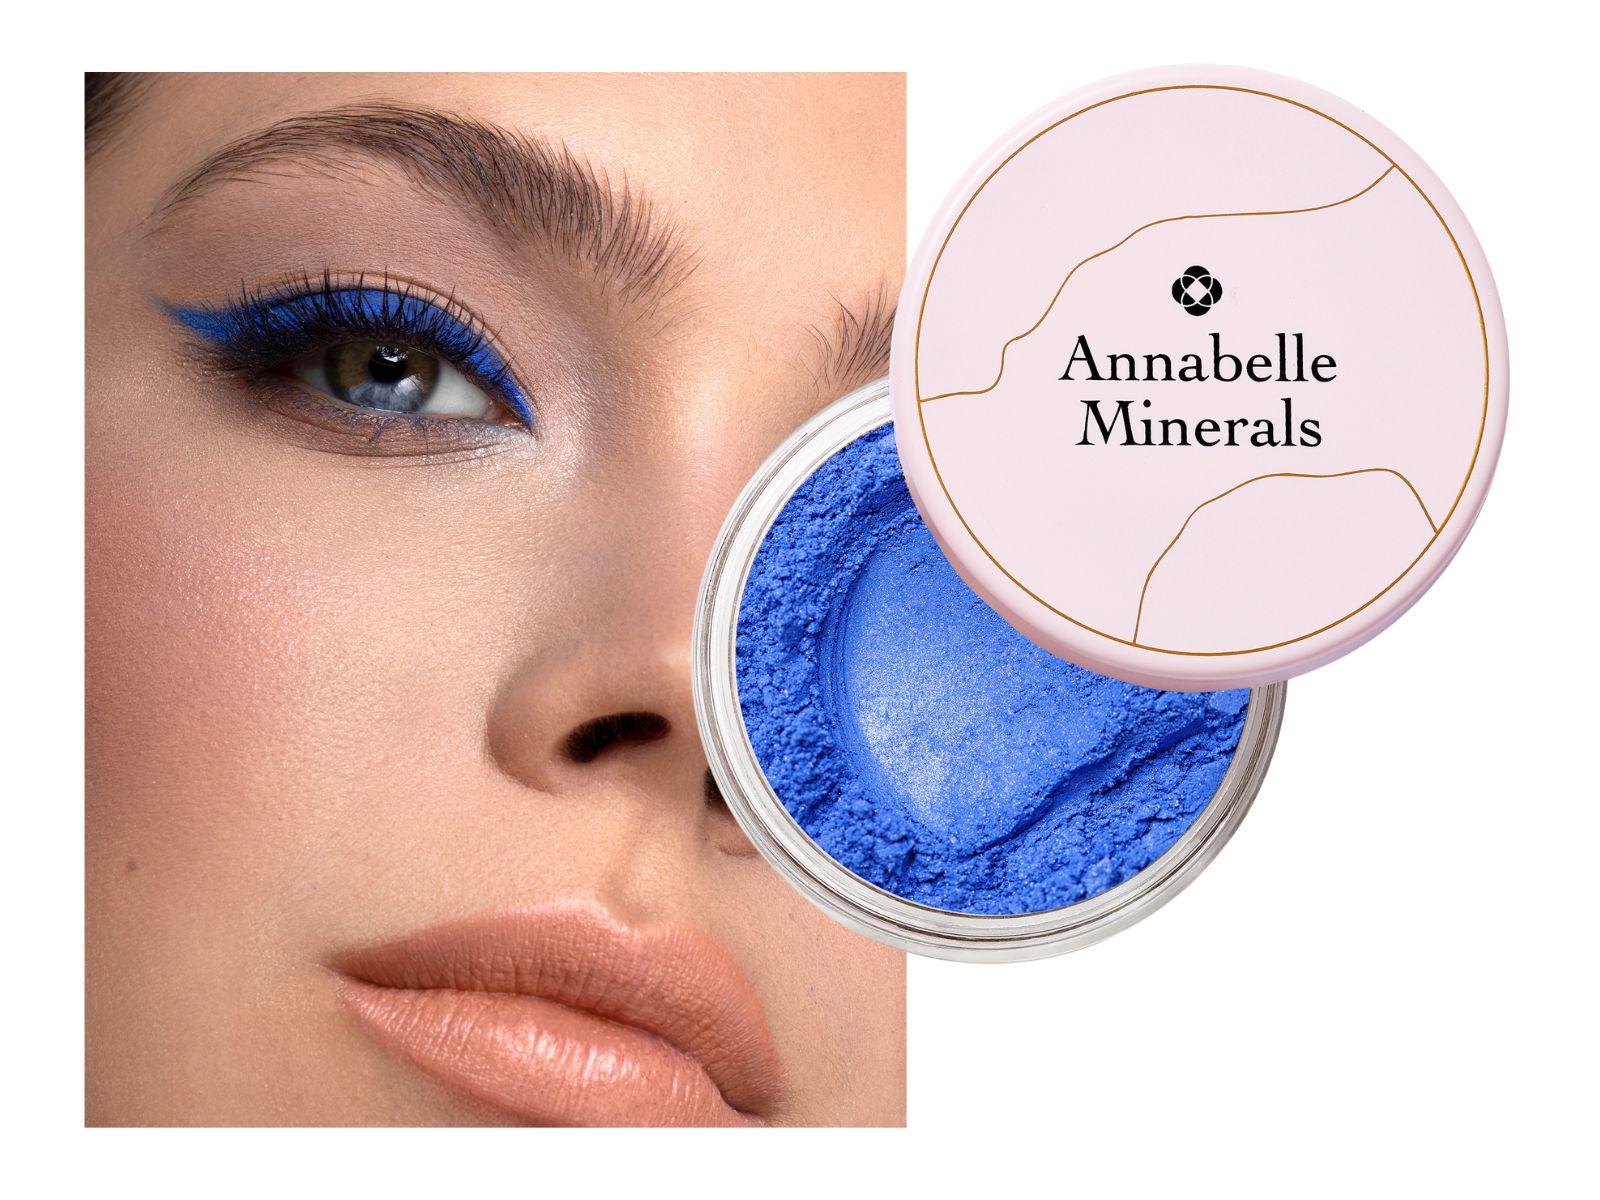 Cień mineralny w intensywnie niebieskim kolorze Cornflower Annabelle Minerals do makijażu oczu przy typie urody zima